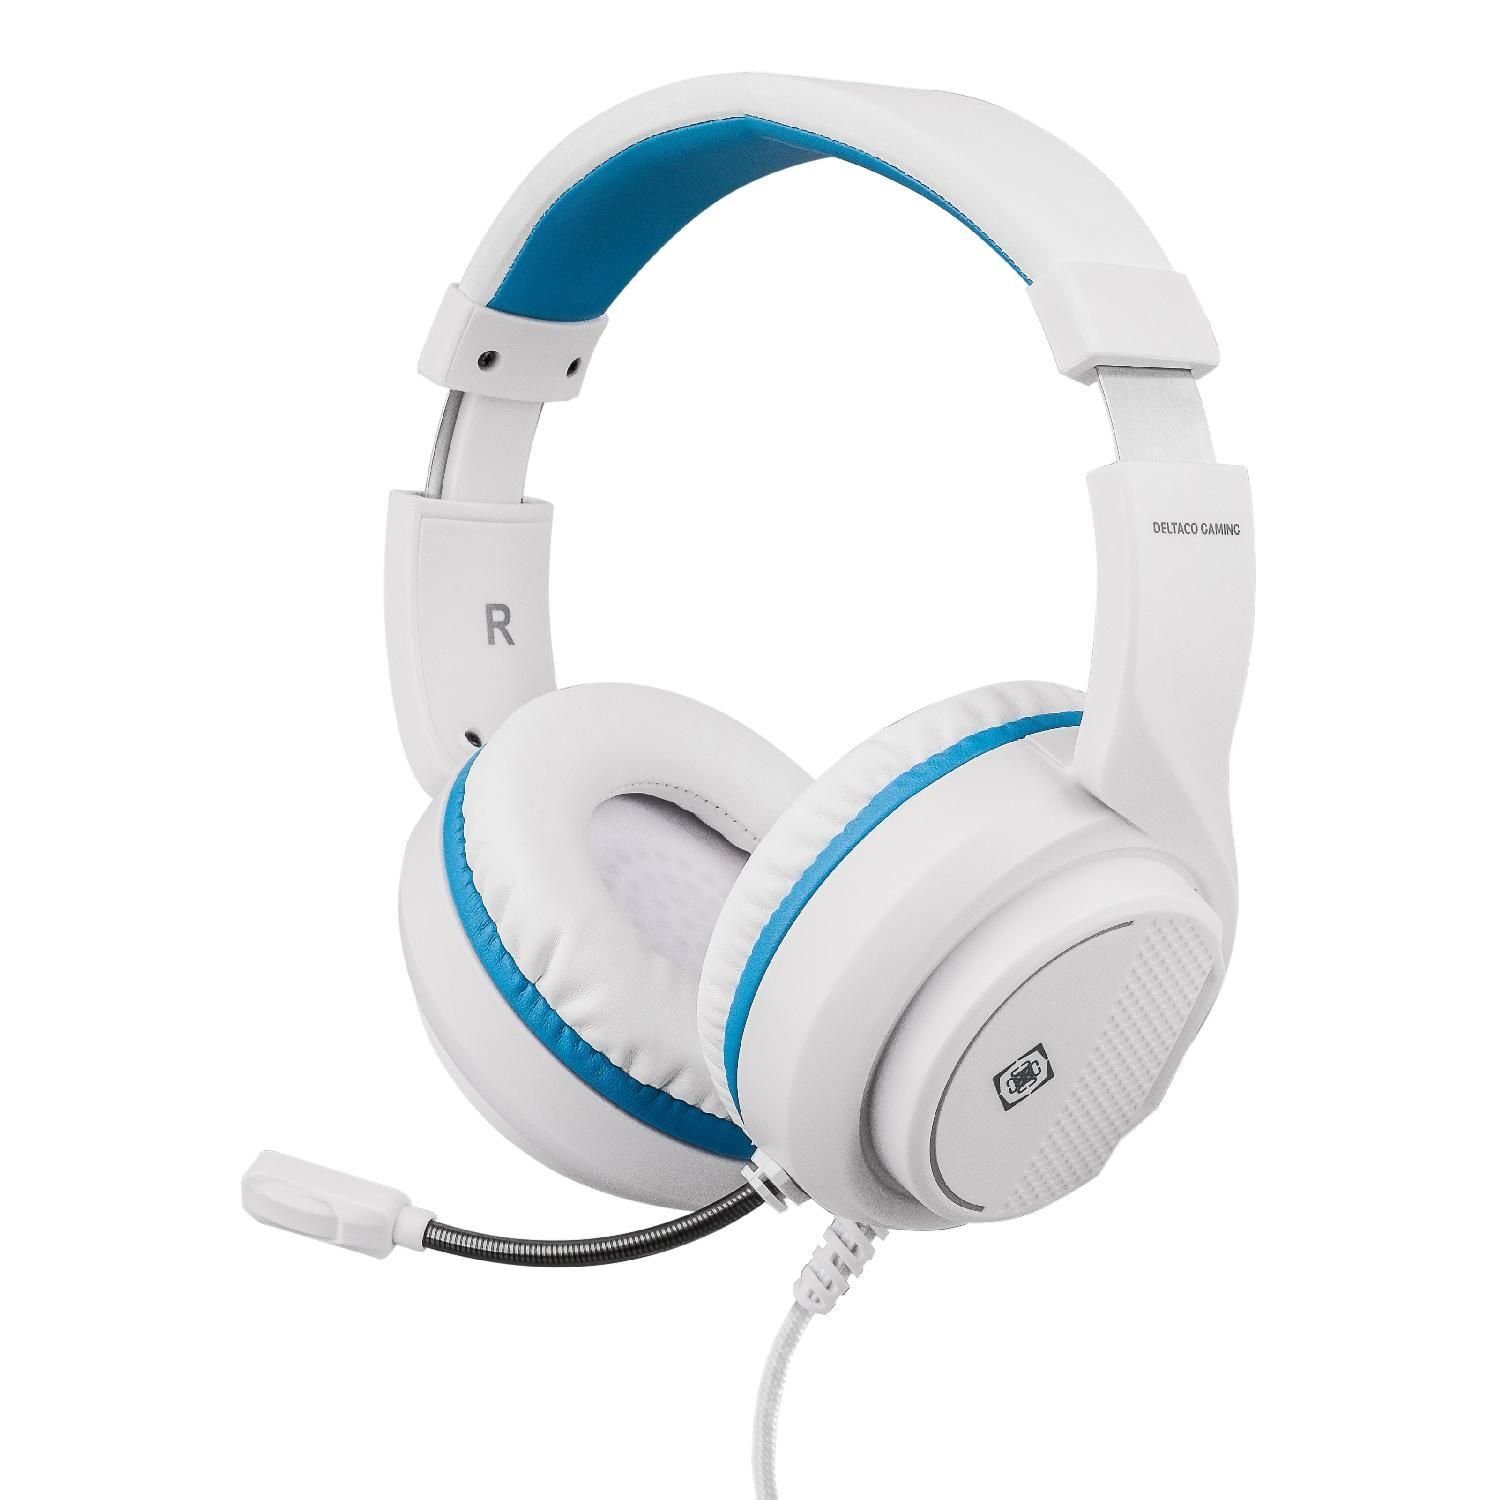 Herstellergarantie) inkl. 5 Jahre Headset Kopfhörer PS5 Headset für Stereo weiß Gaming Mikrofon, DELTACO (außenstehendes